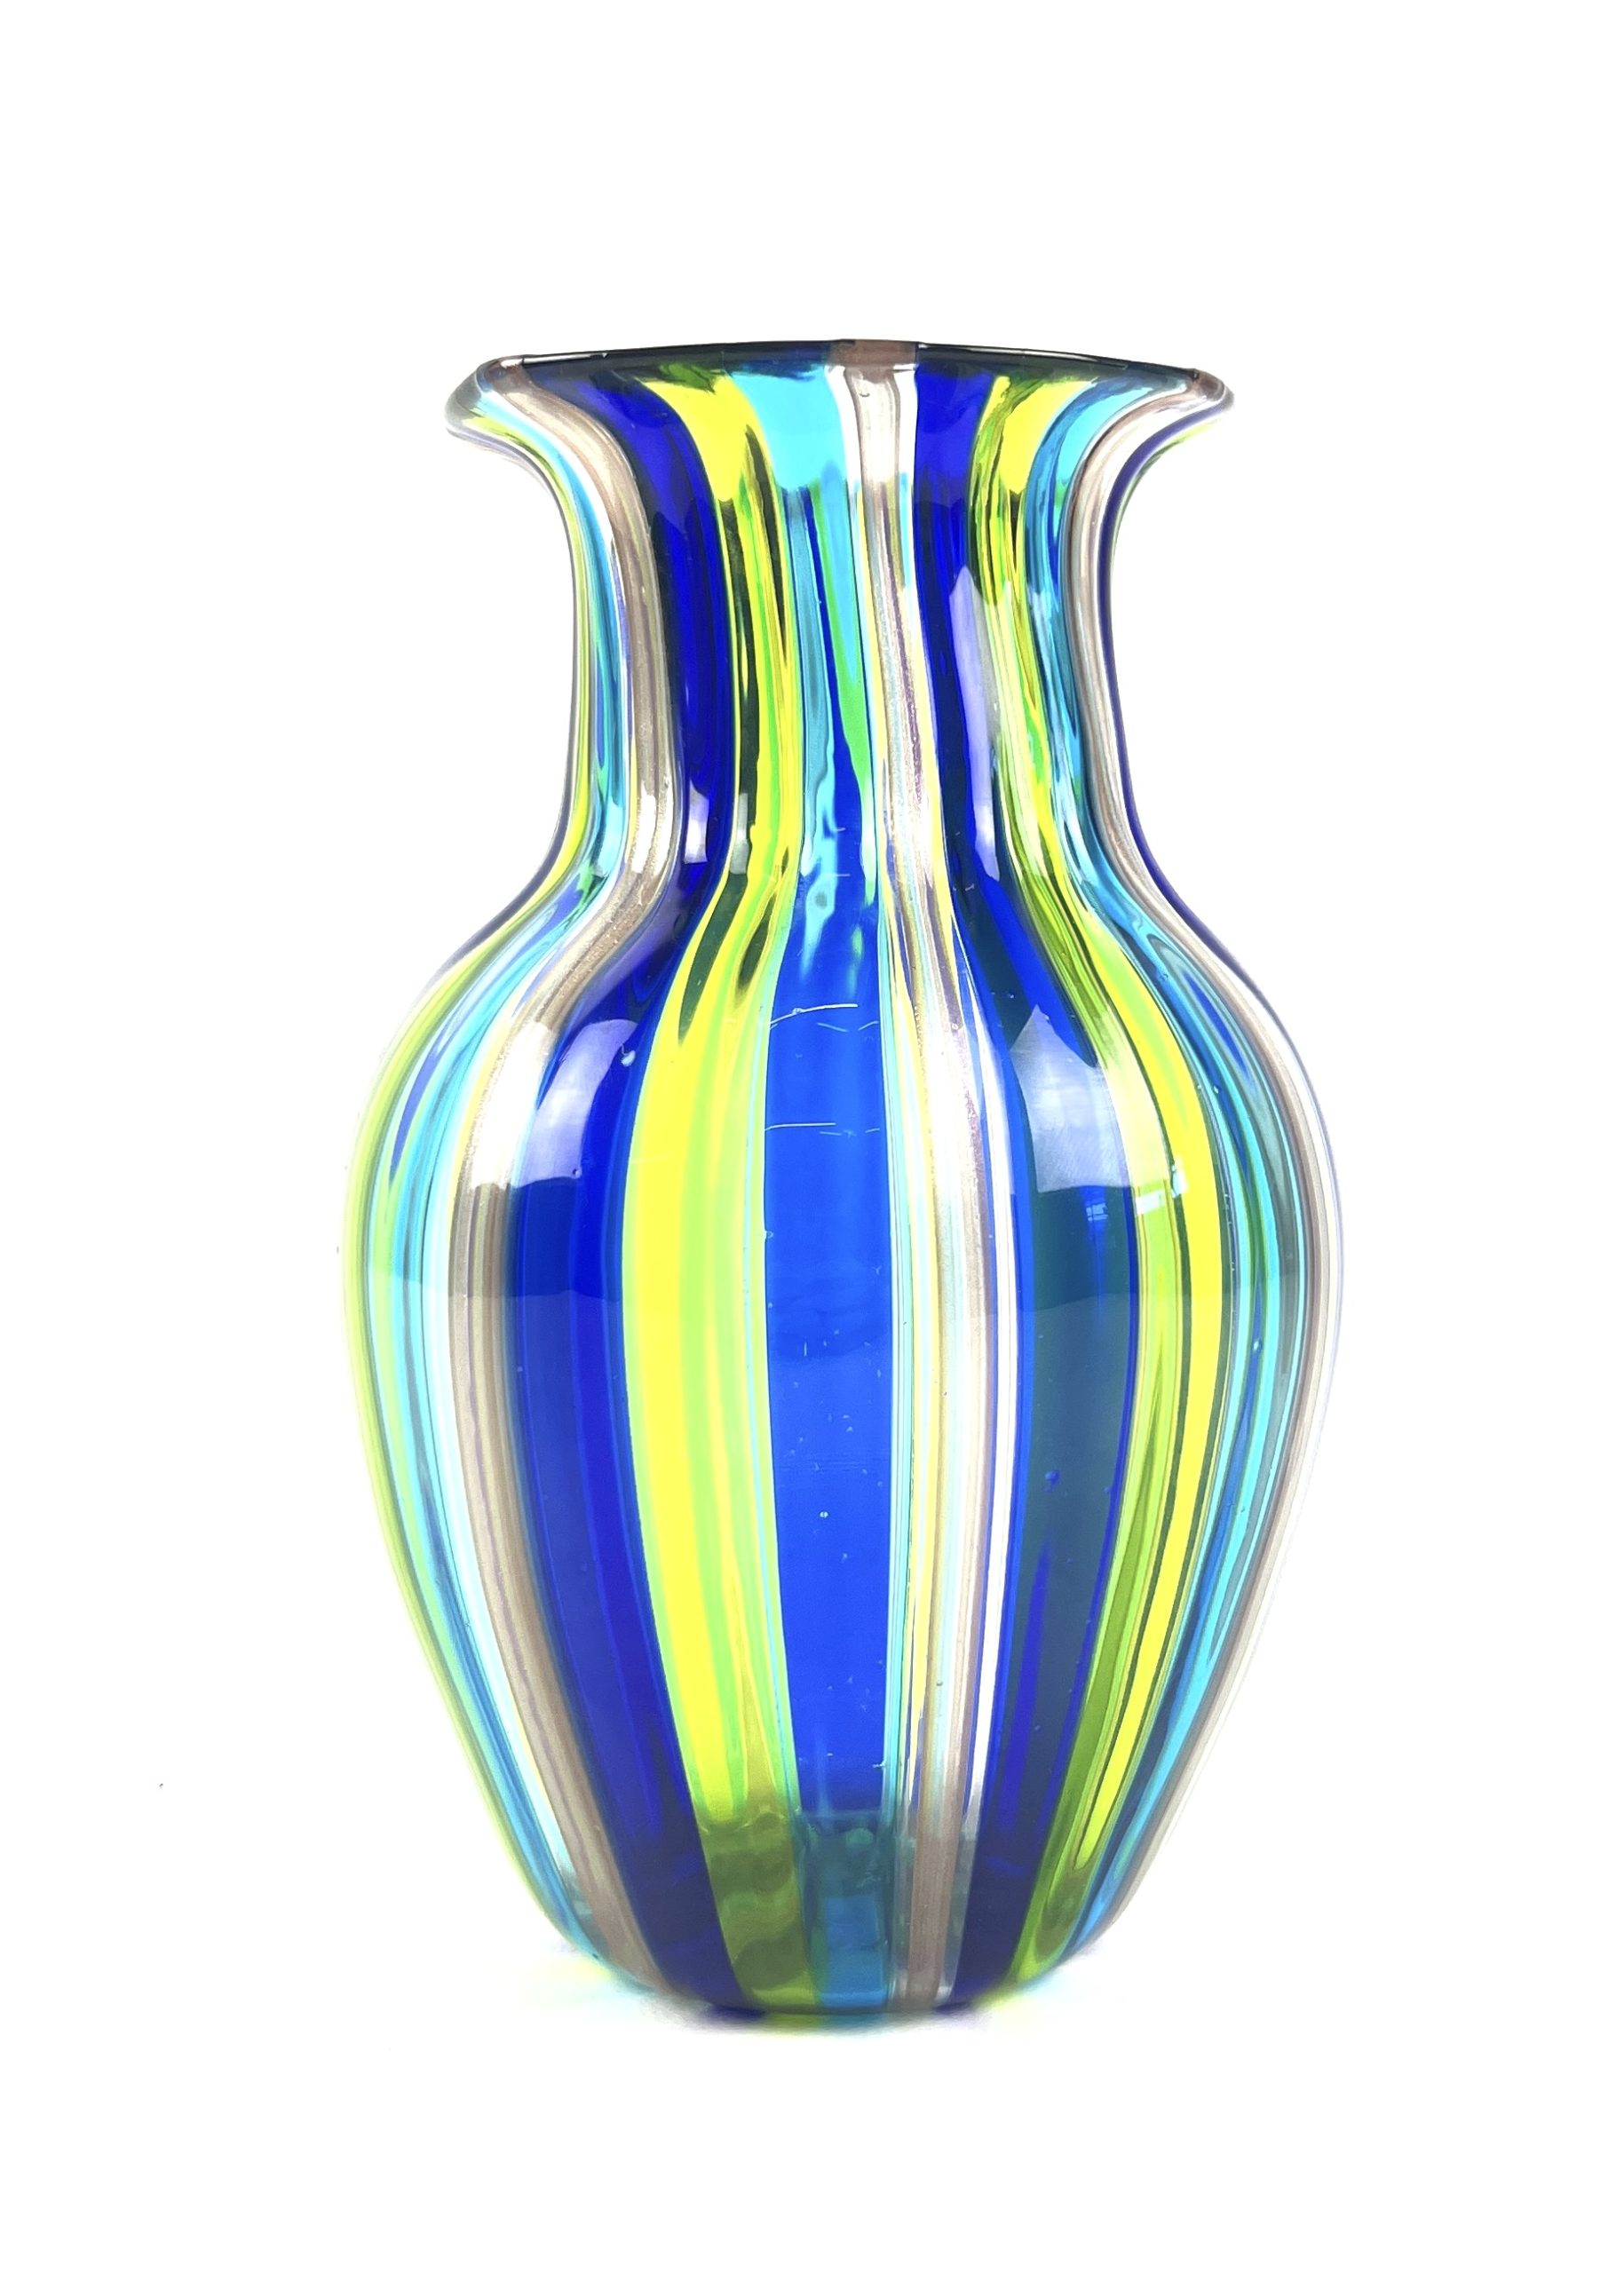 Dissette - Multicolored Murano Glass Vase 